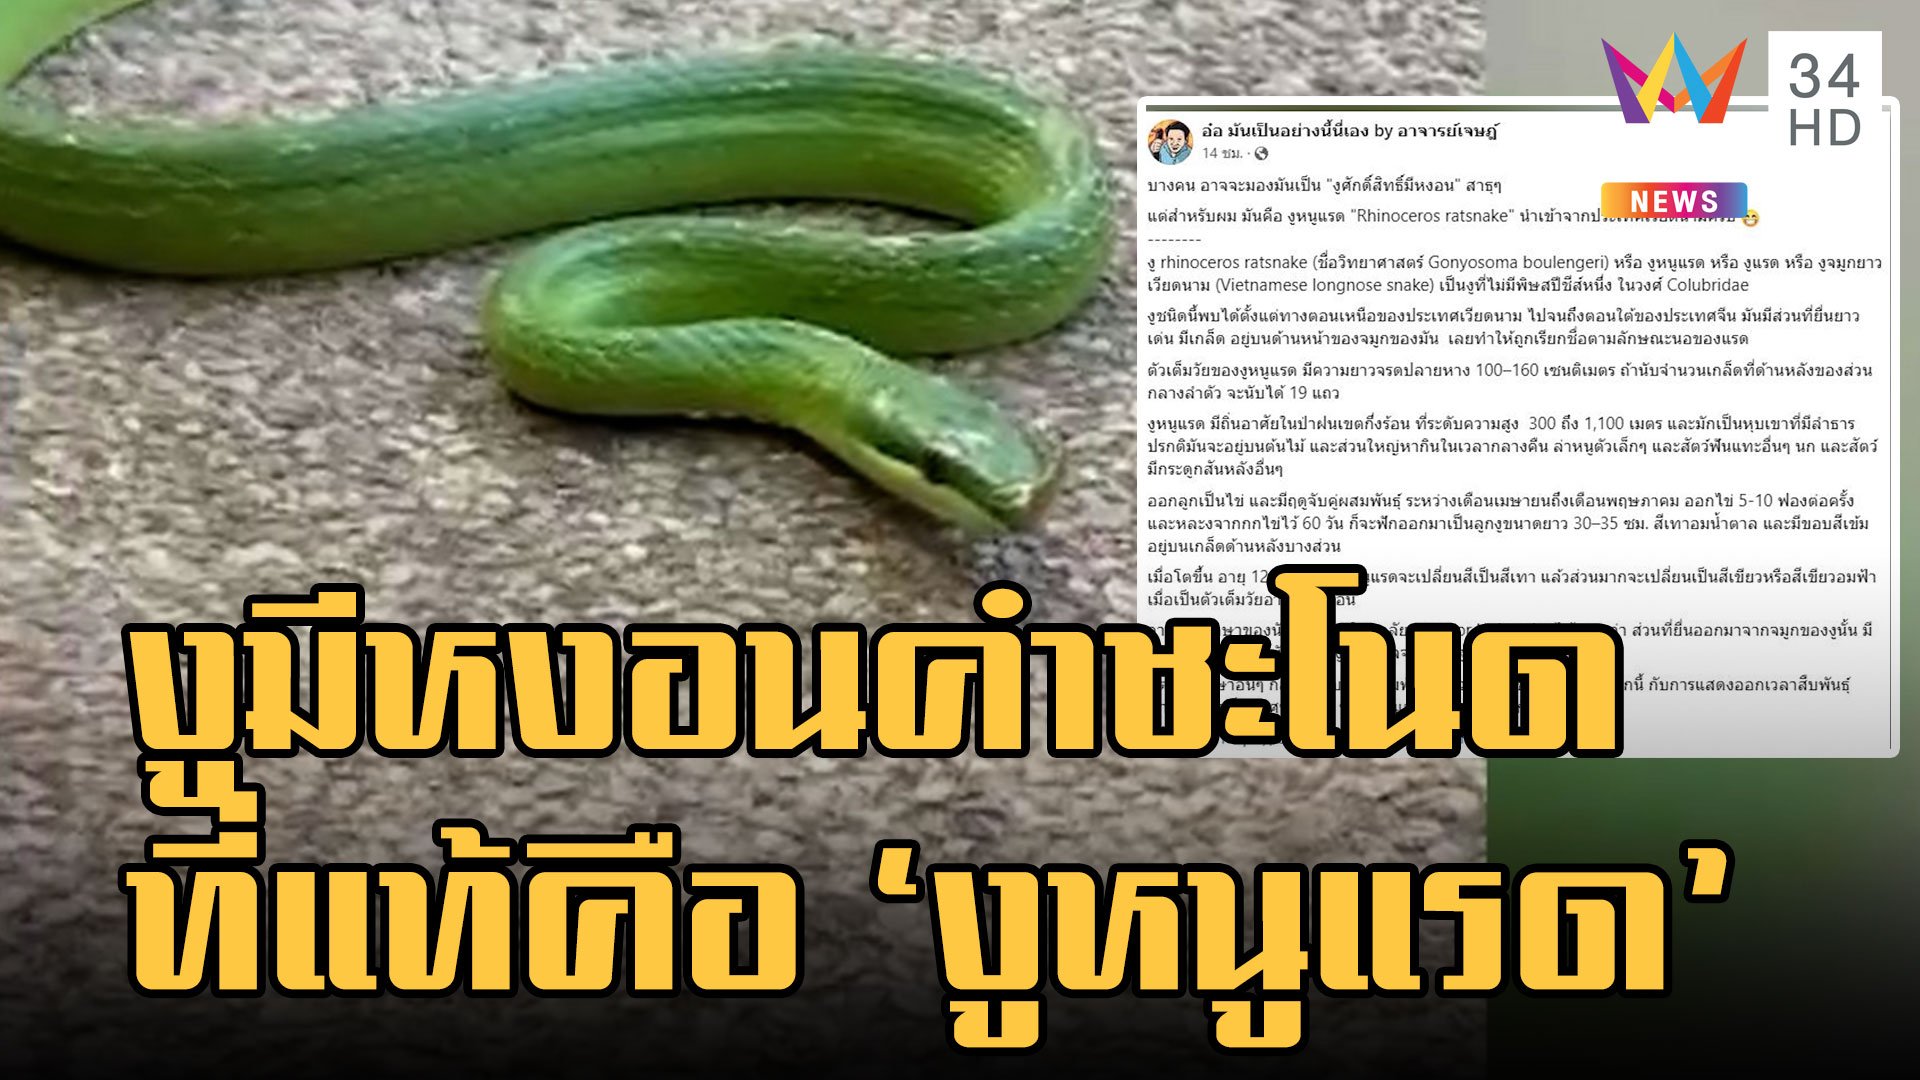 อ.เจษฎา บอกแล้วงูมีหงอนคือ "งูหนูแรด" หงอนใช้ผสมพันธุ์  | ข่าวเที่ยงอมรินทร์ | 4 ธ.ค. 65 | AMARIN TVHD34